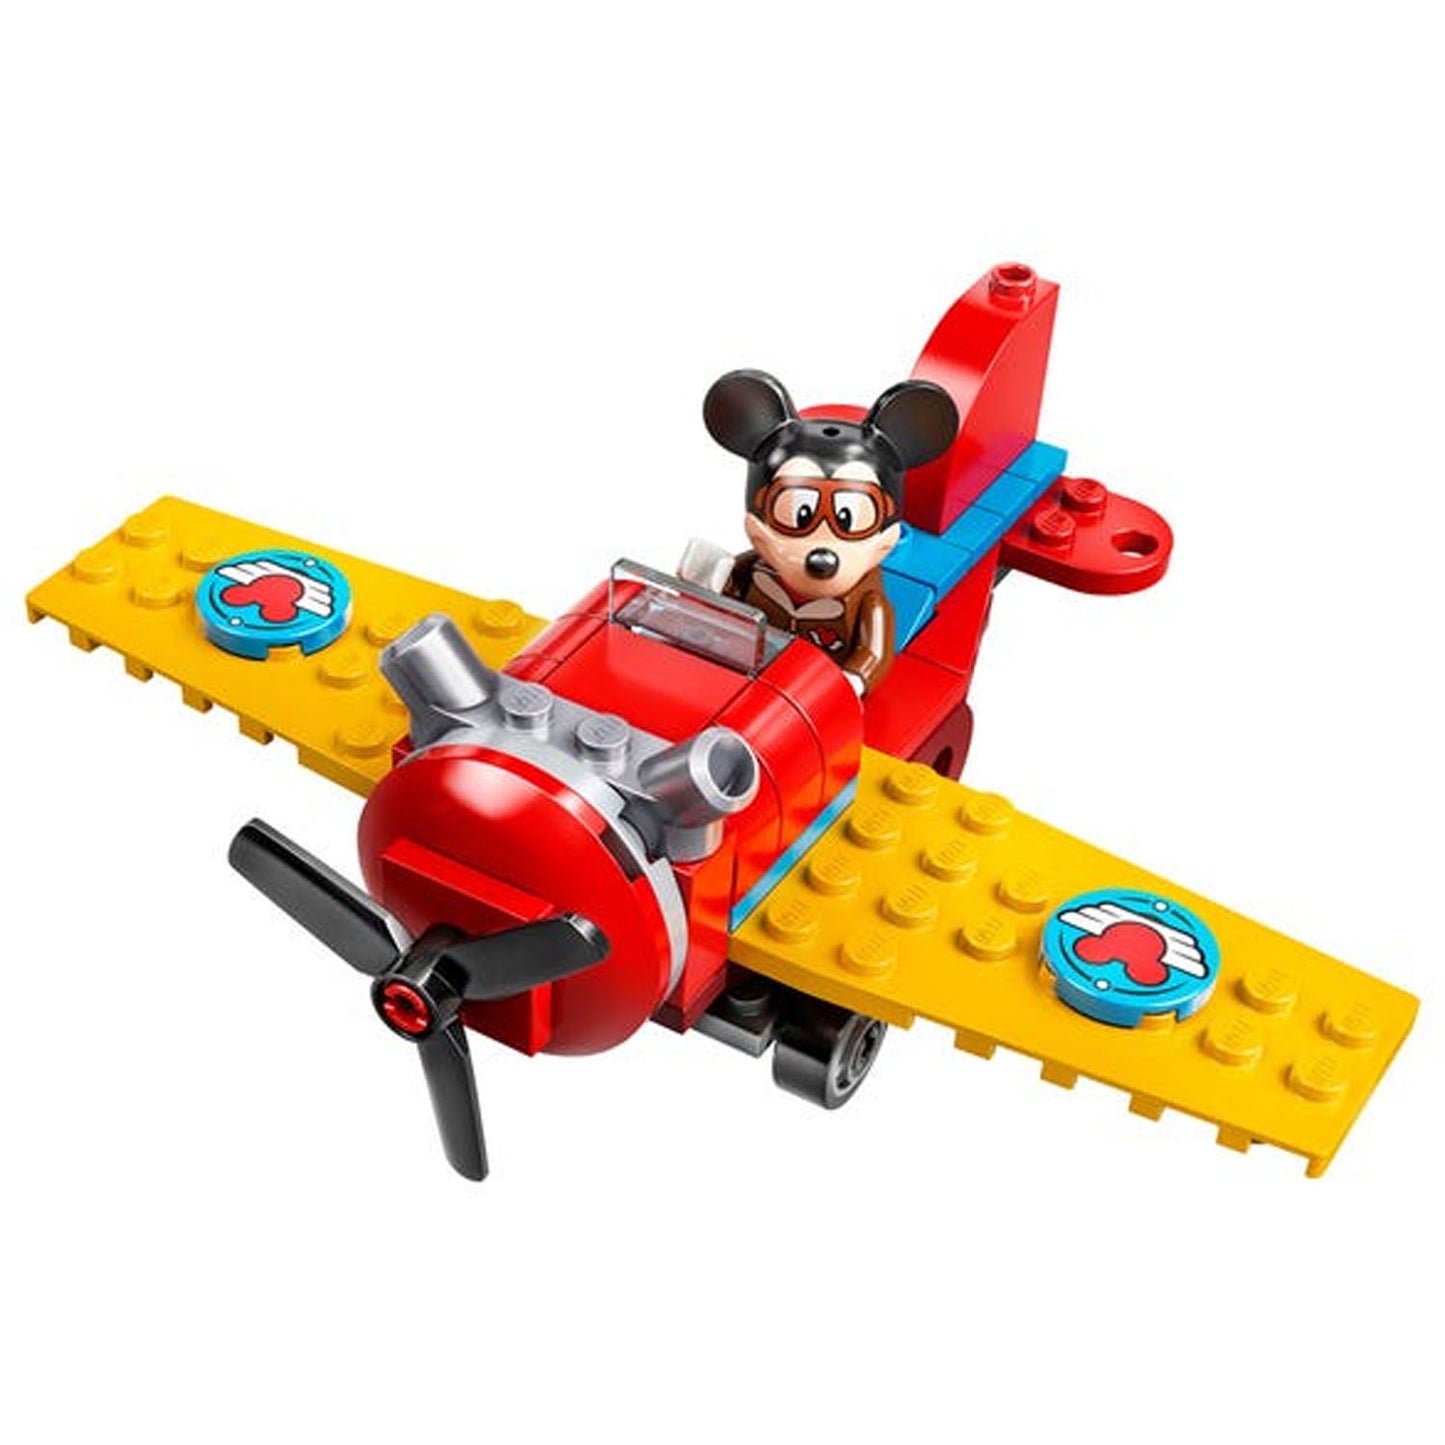 Lego Disney Avion Clasico De Mickey Mouse - Crazygames